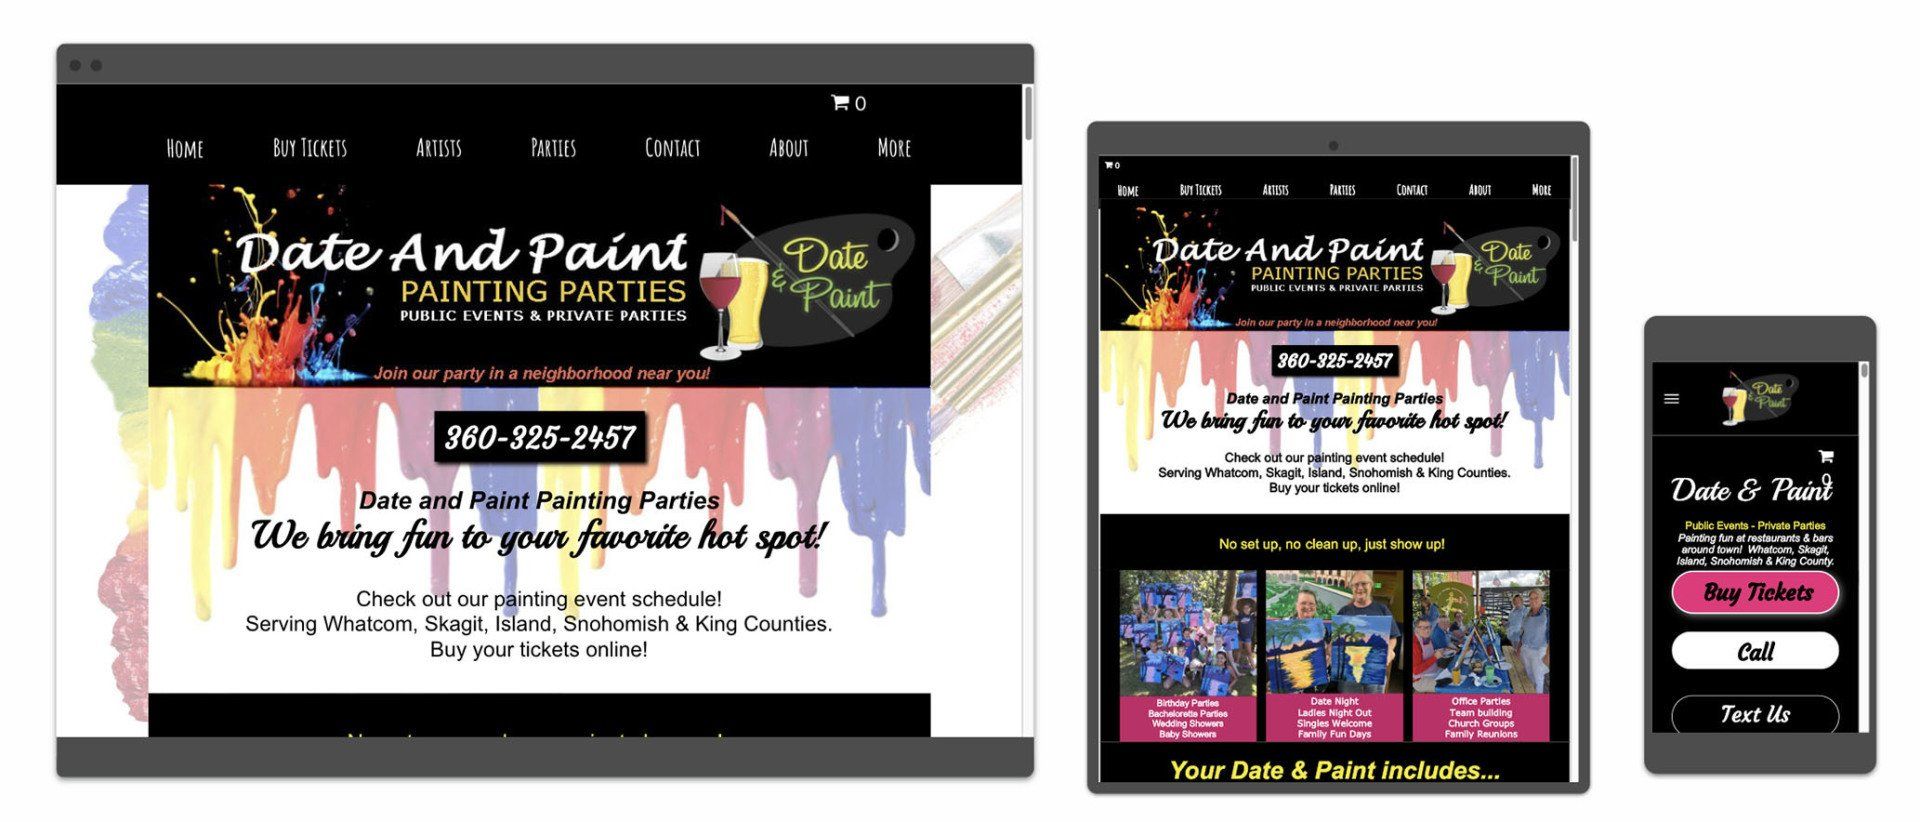 Date & Paint website image